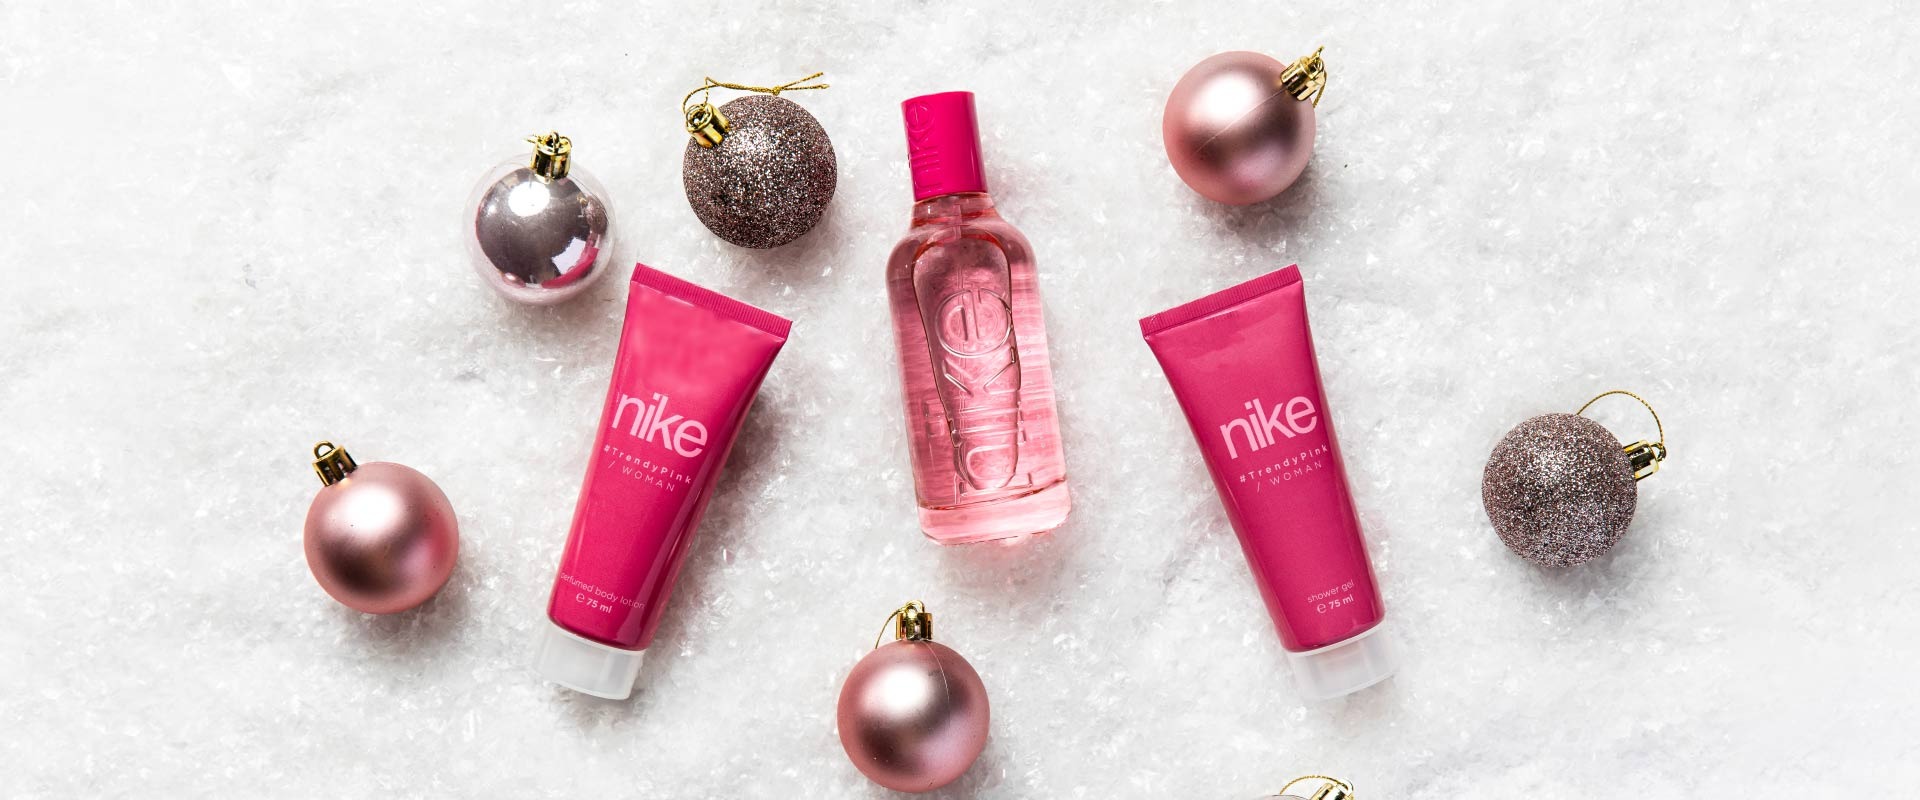 Los 6 mejores perfumes para regalar esta Navidad por menos de 15€